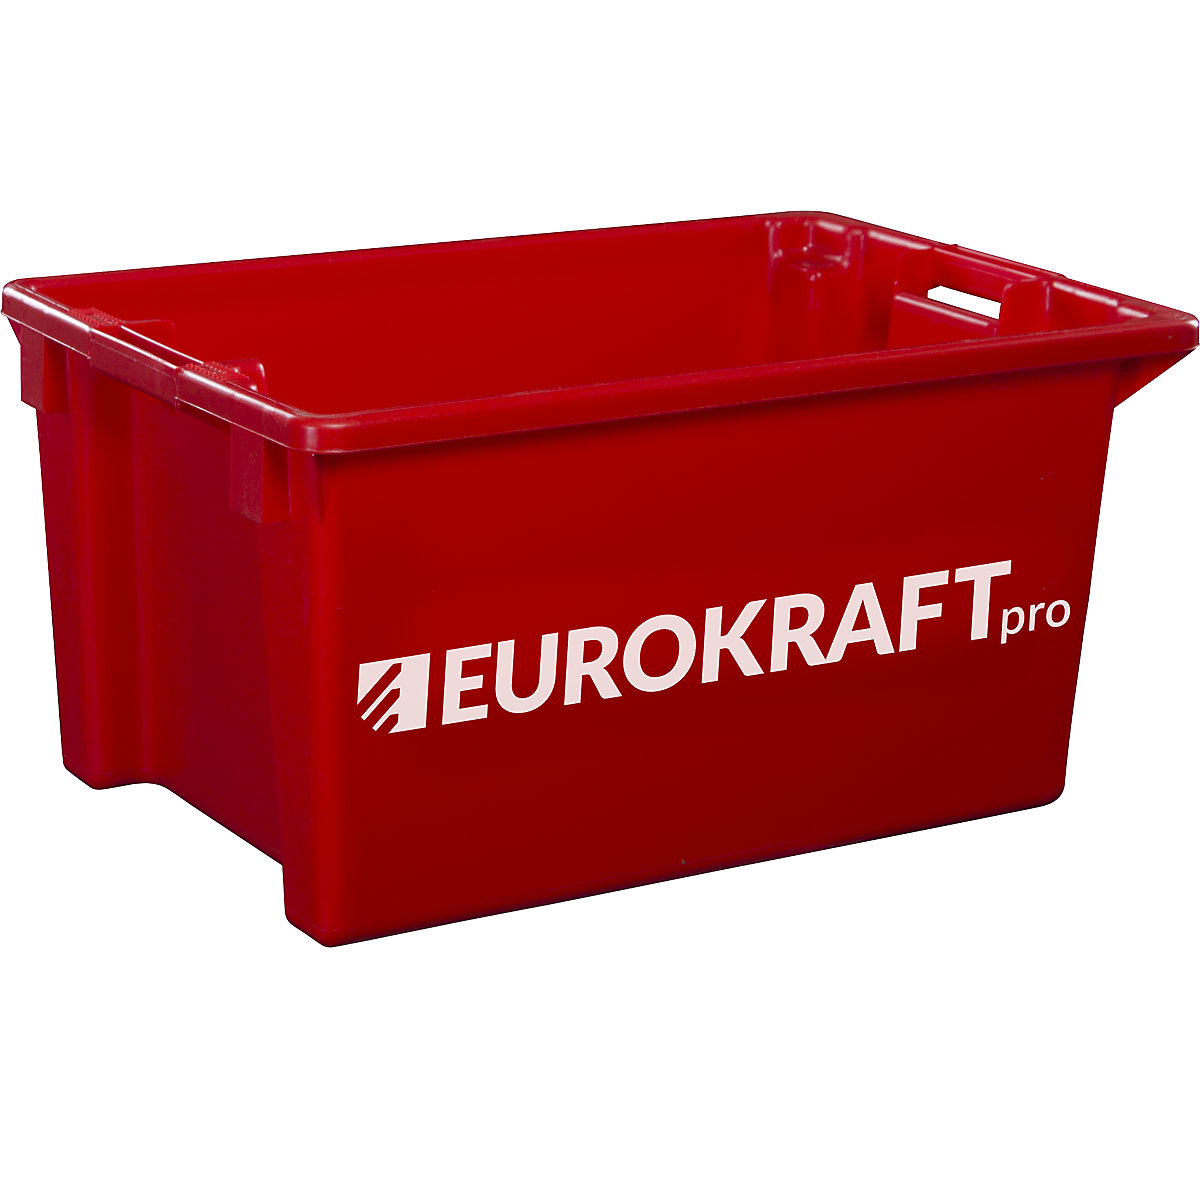 EUROKRAFTpro – Otočná stohovací nádoba z polypropylenu vhodného pro potraviny